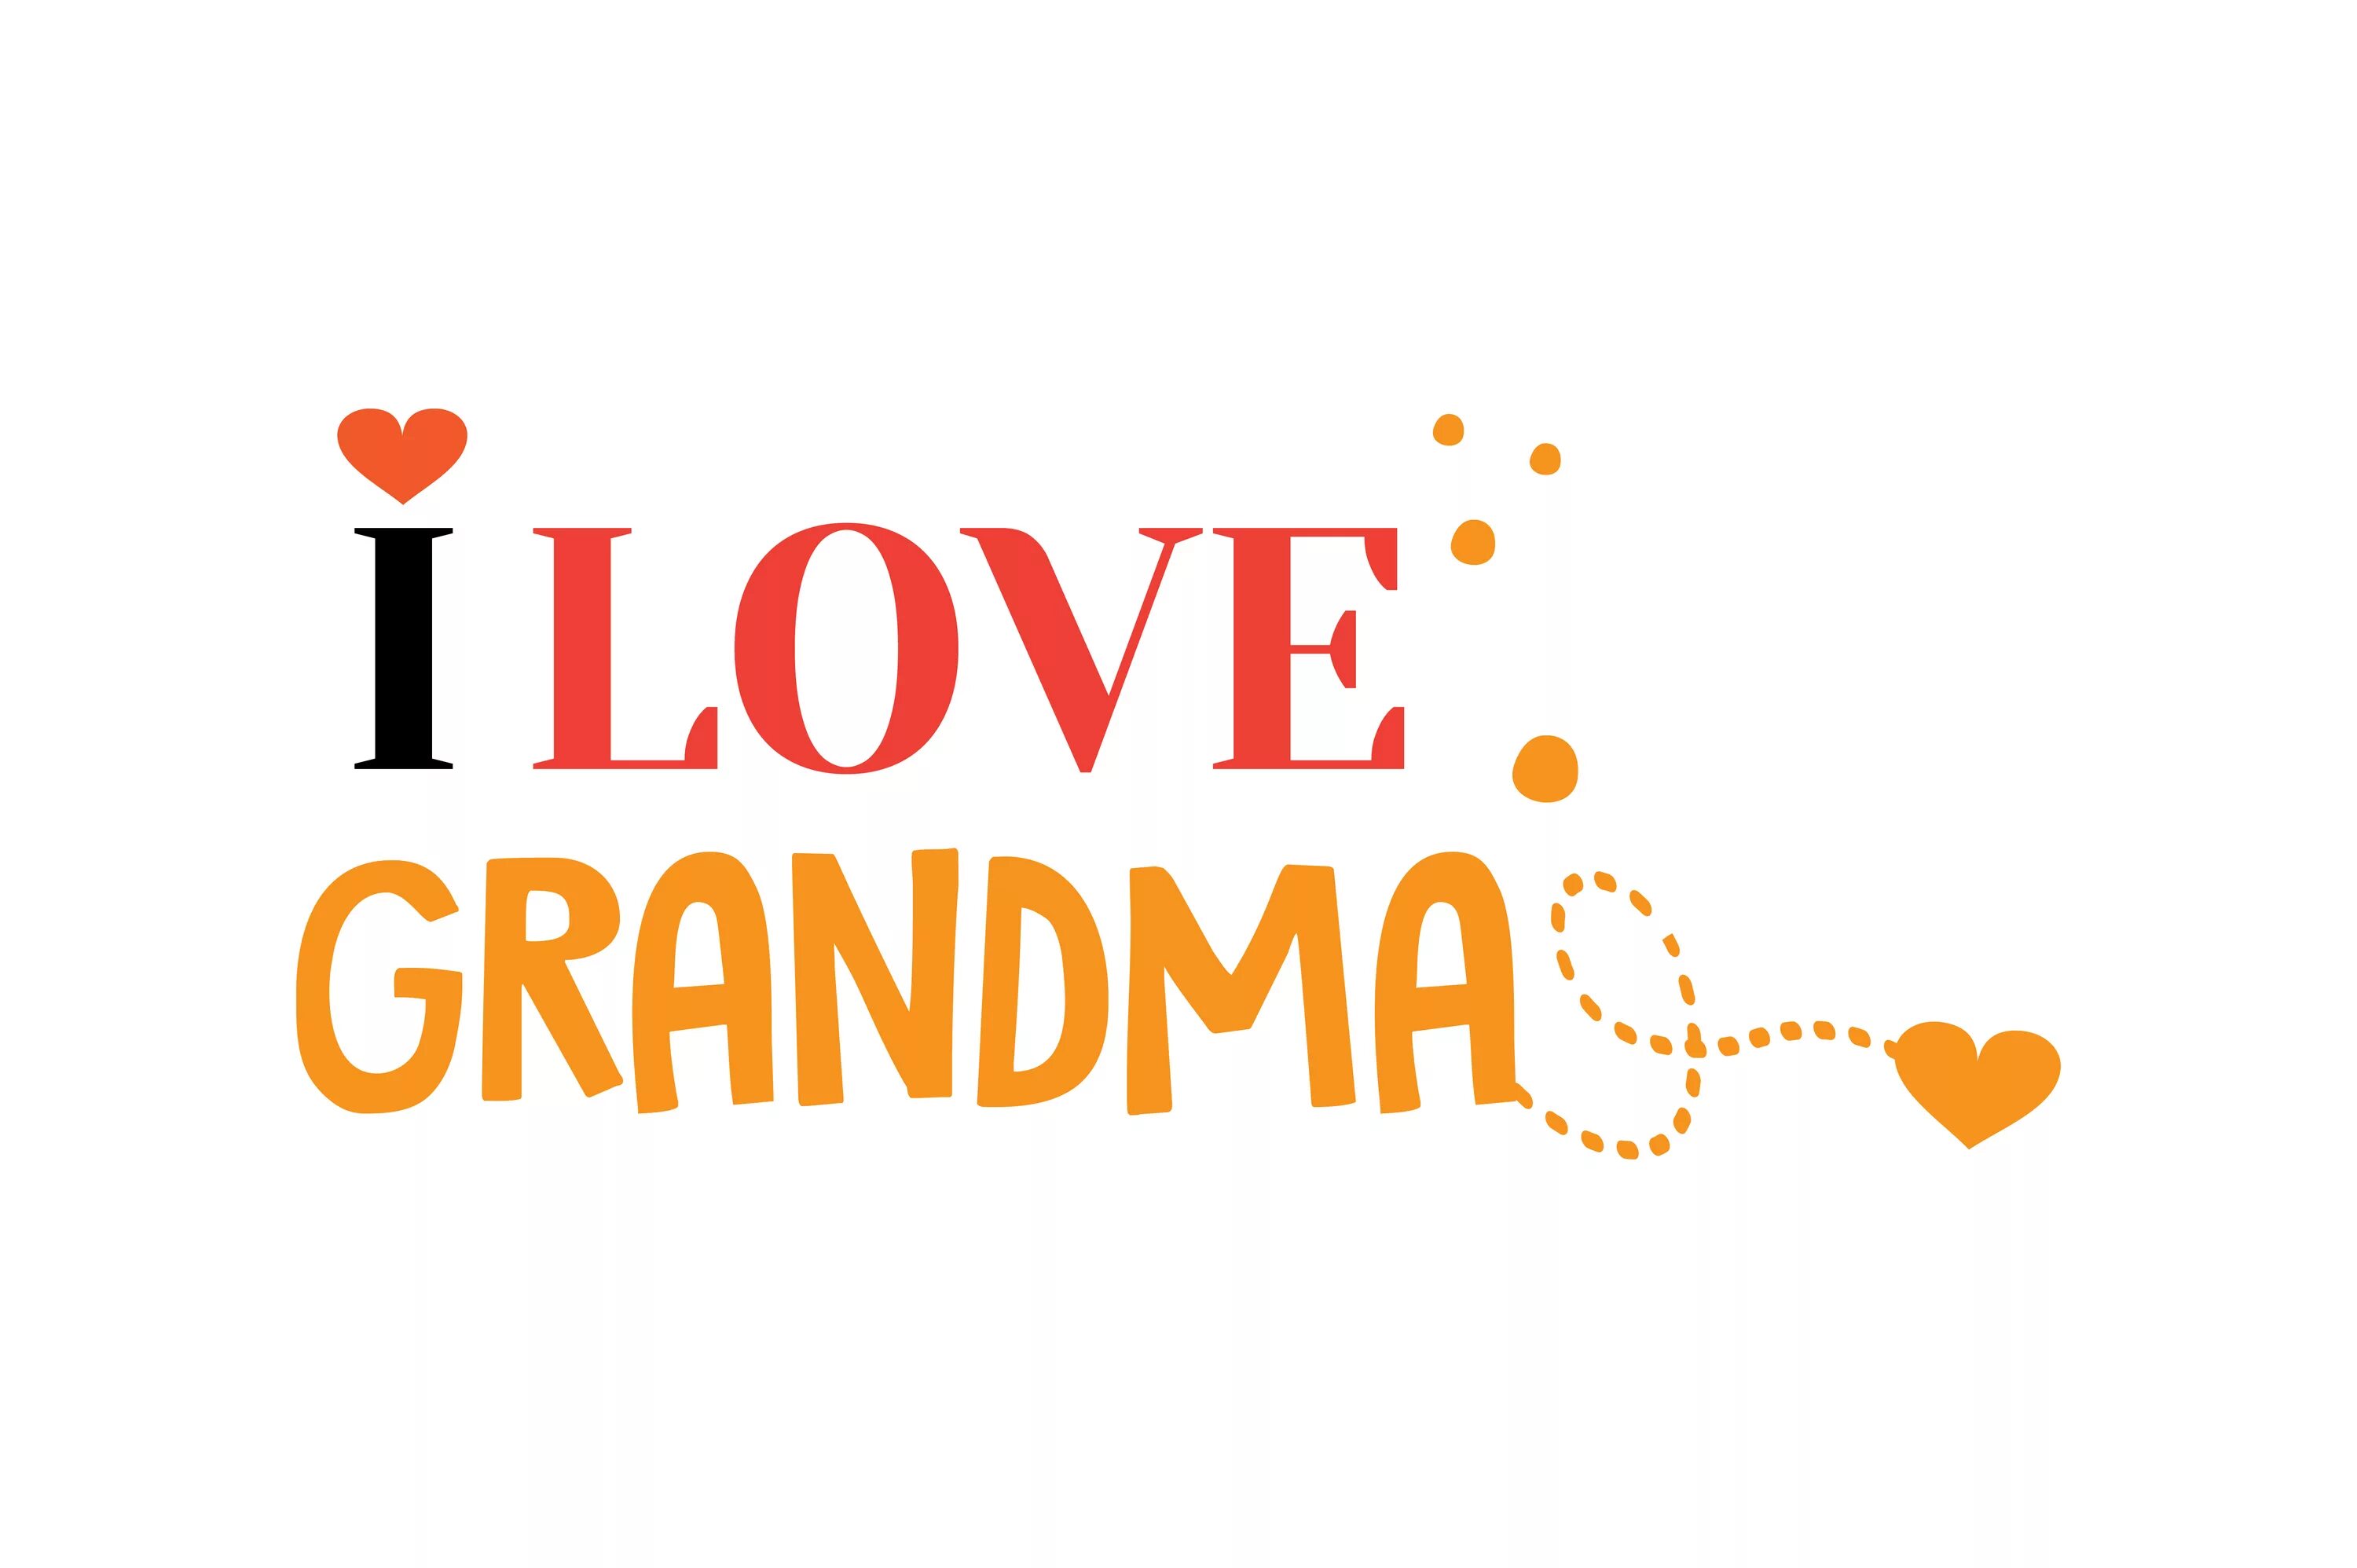 Grandma's love. Grandma надпись. I Love grandmother. I Love you my grandmother. I Love you бабушка.